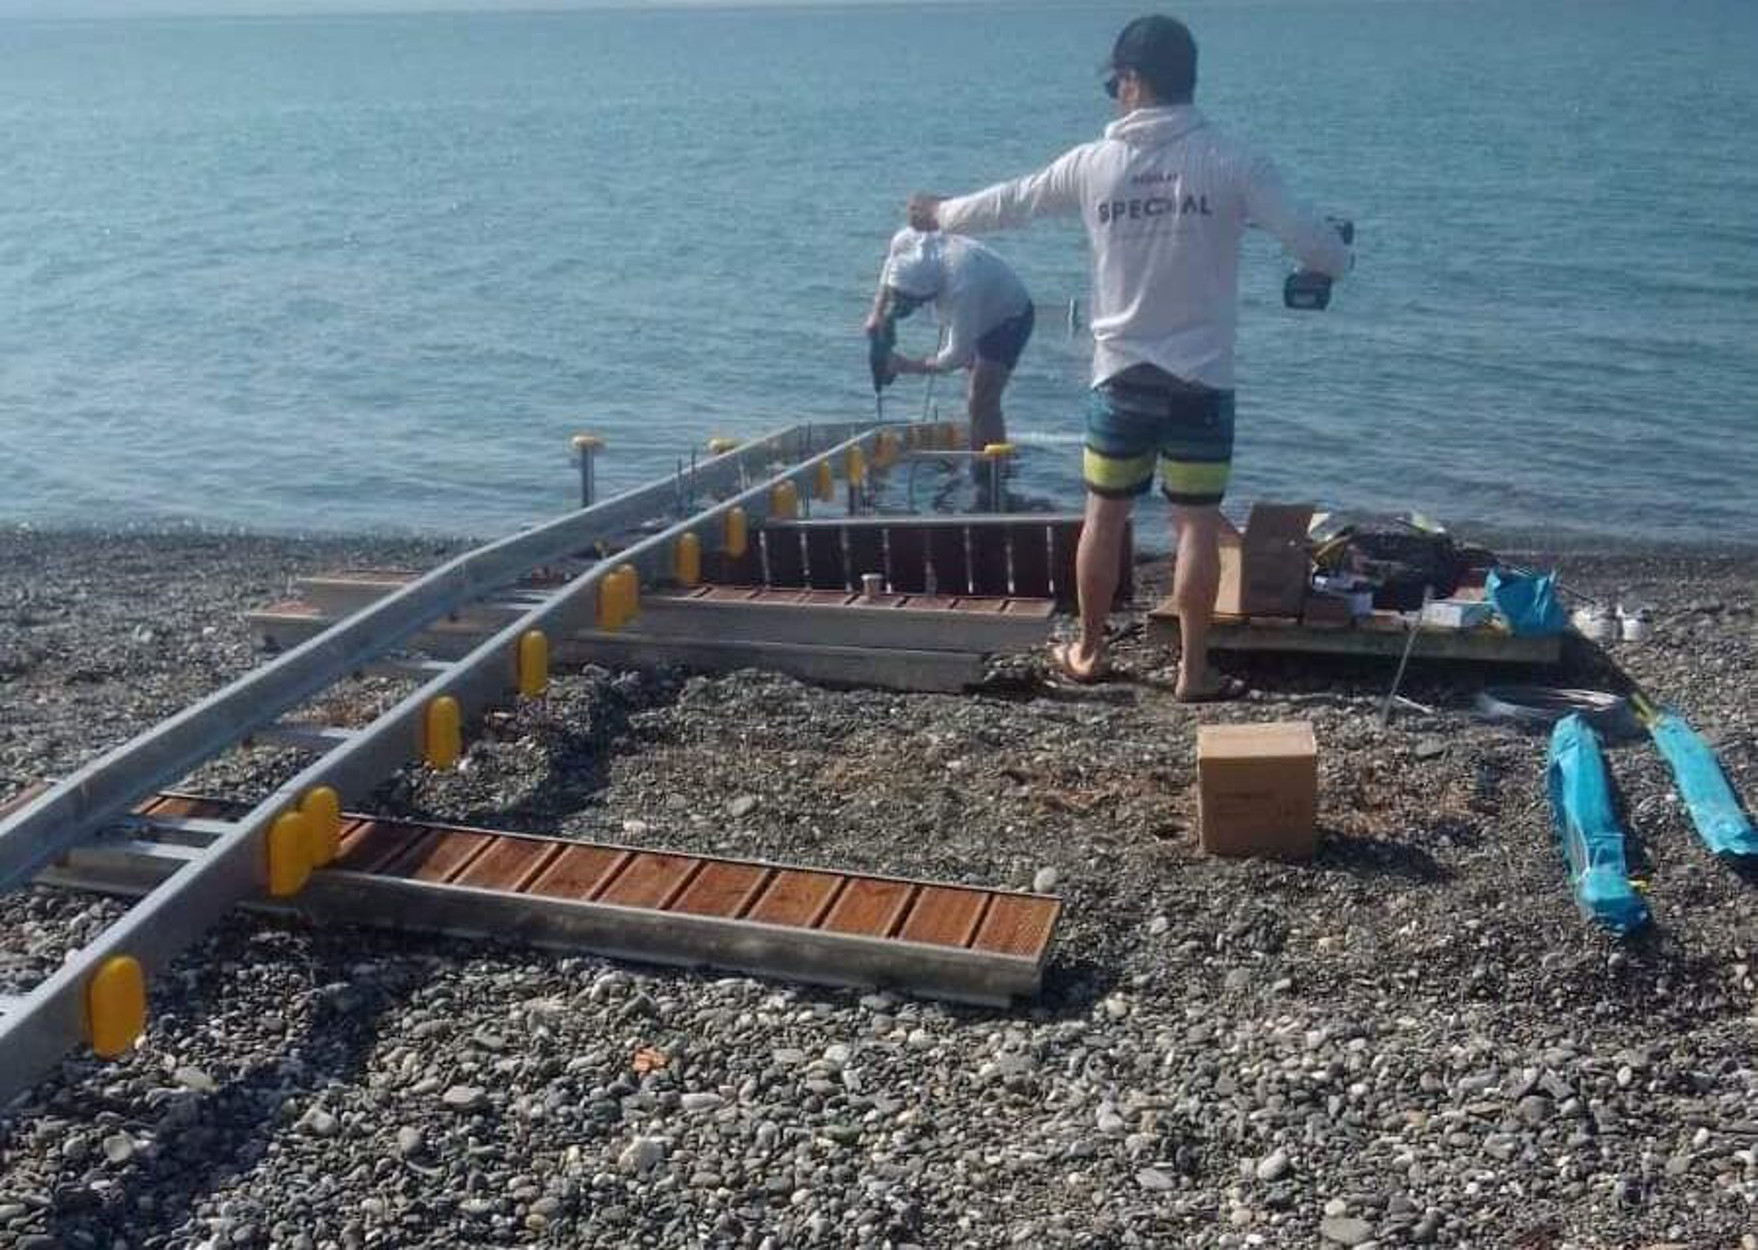 Ψαχνά: Κατήγγειλε την τοποθέτηση ράμπας ΑΜΕΑ στην παραλία για… καταπάτηση αιγιαλού